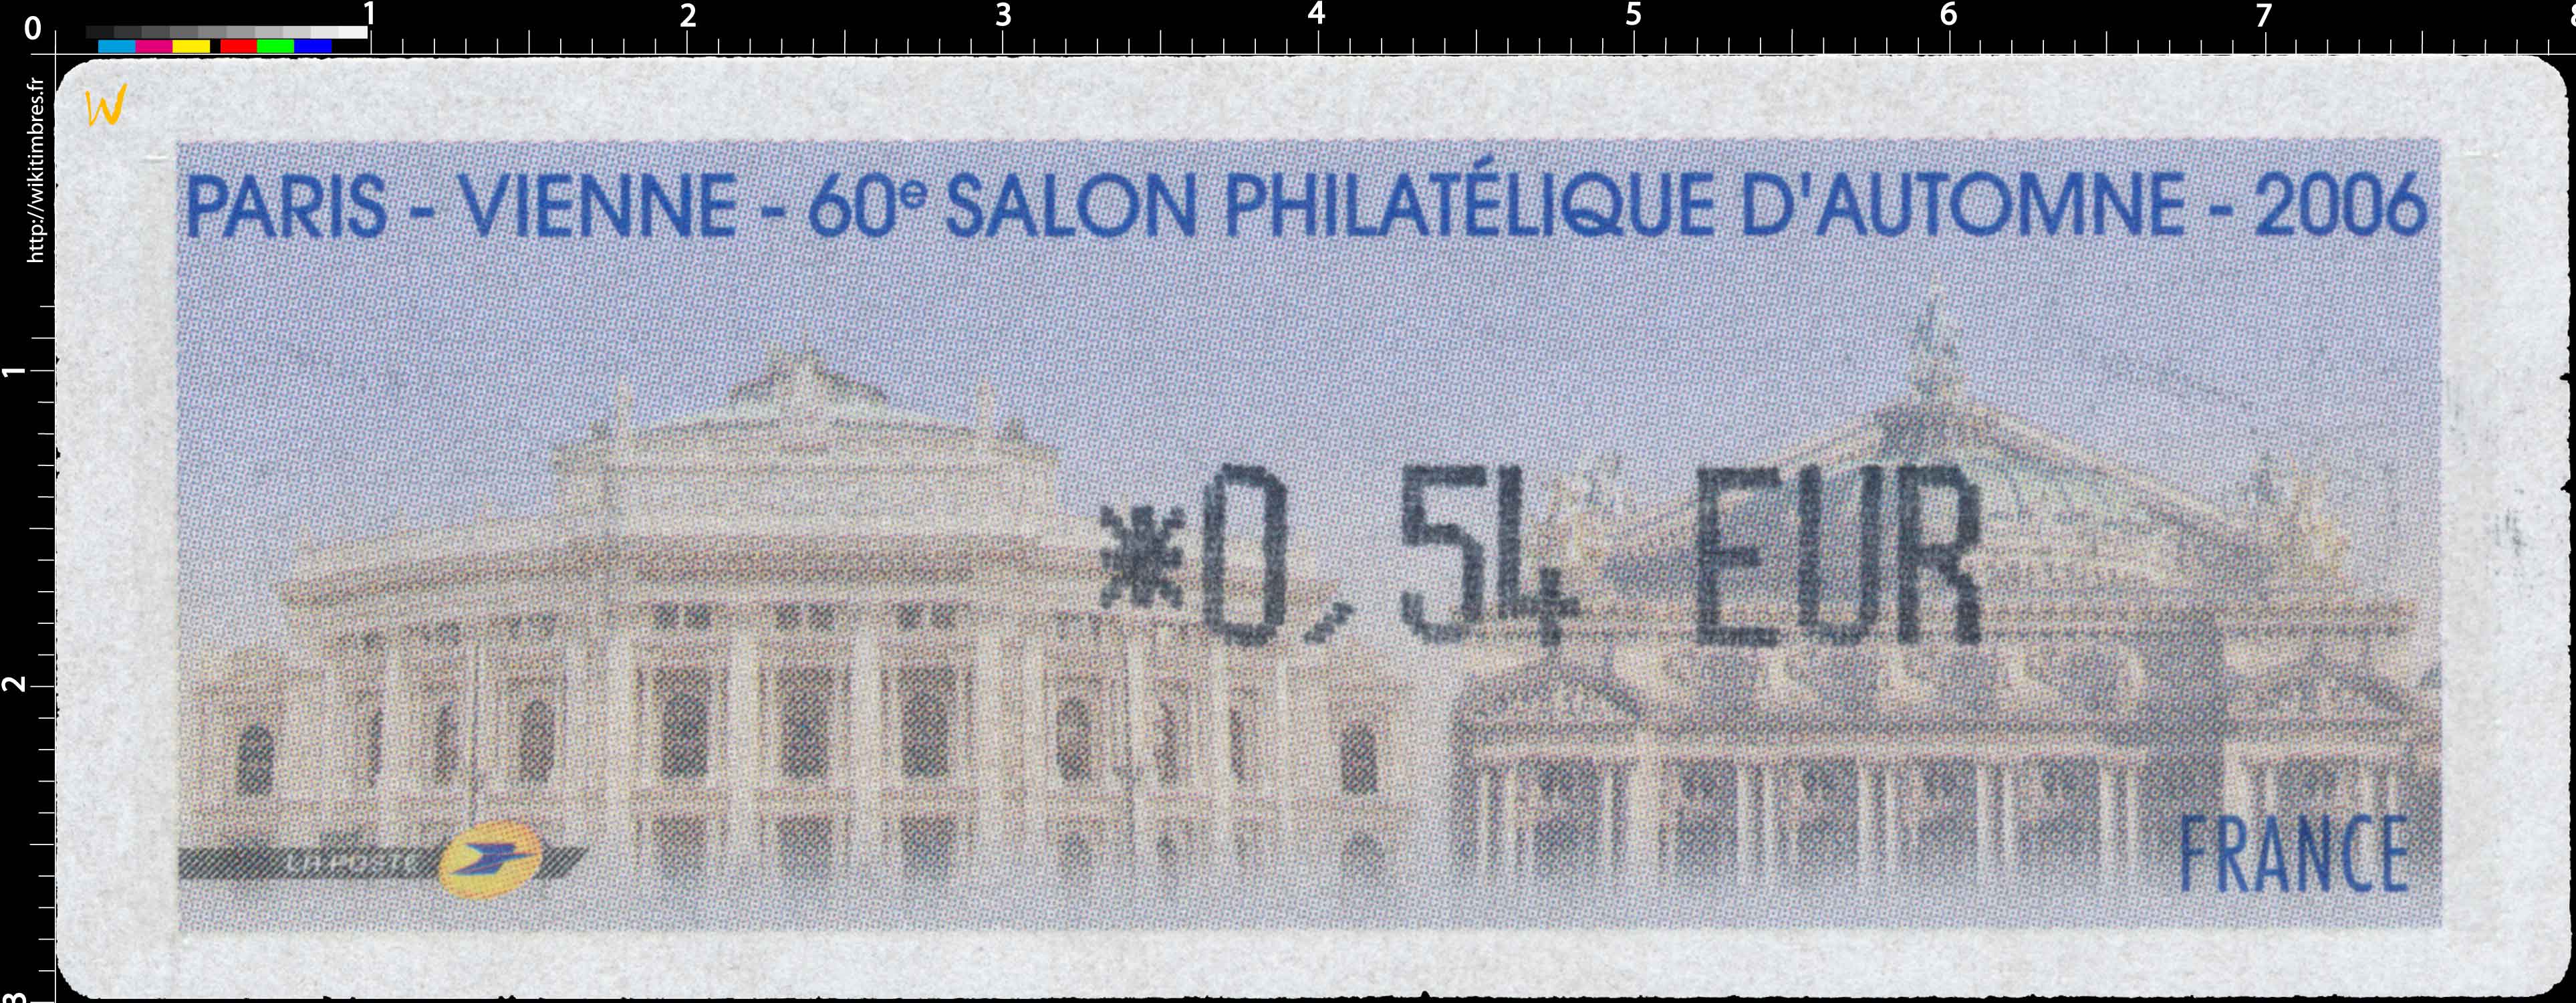 2006 Paris - Vienne - 60e SALON PHILATÉLIQUE D'AUTOMNE